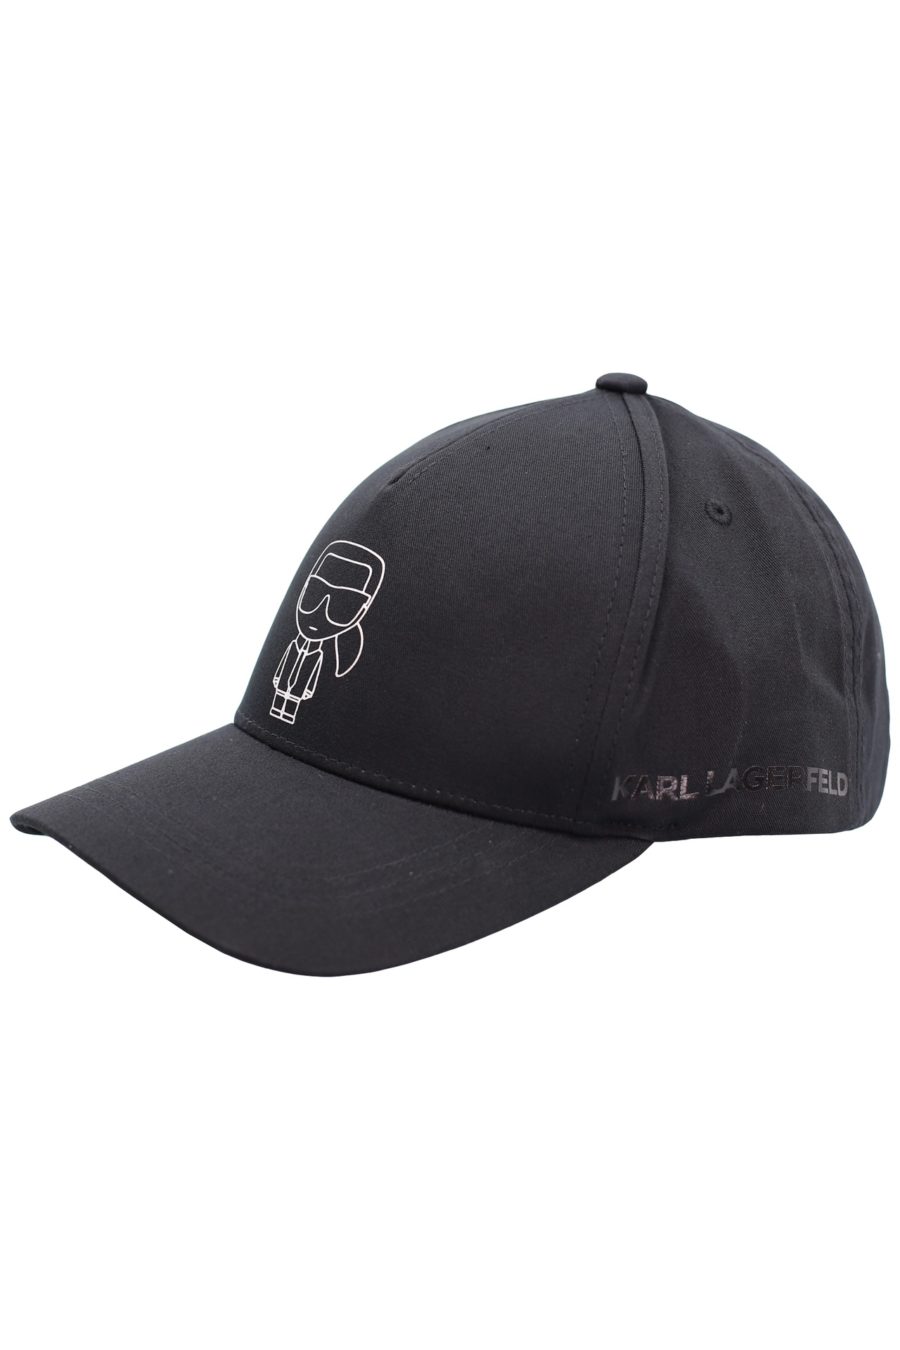 Black cap with silver "Karl" - f1f8017d386ba940160264ddd7d006c37778a0d3